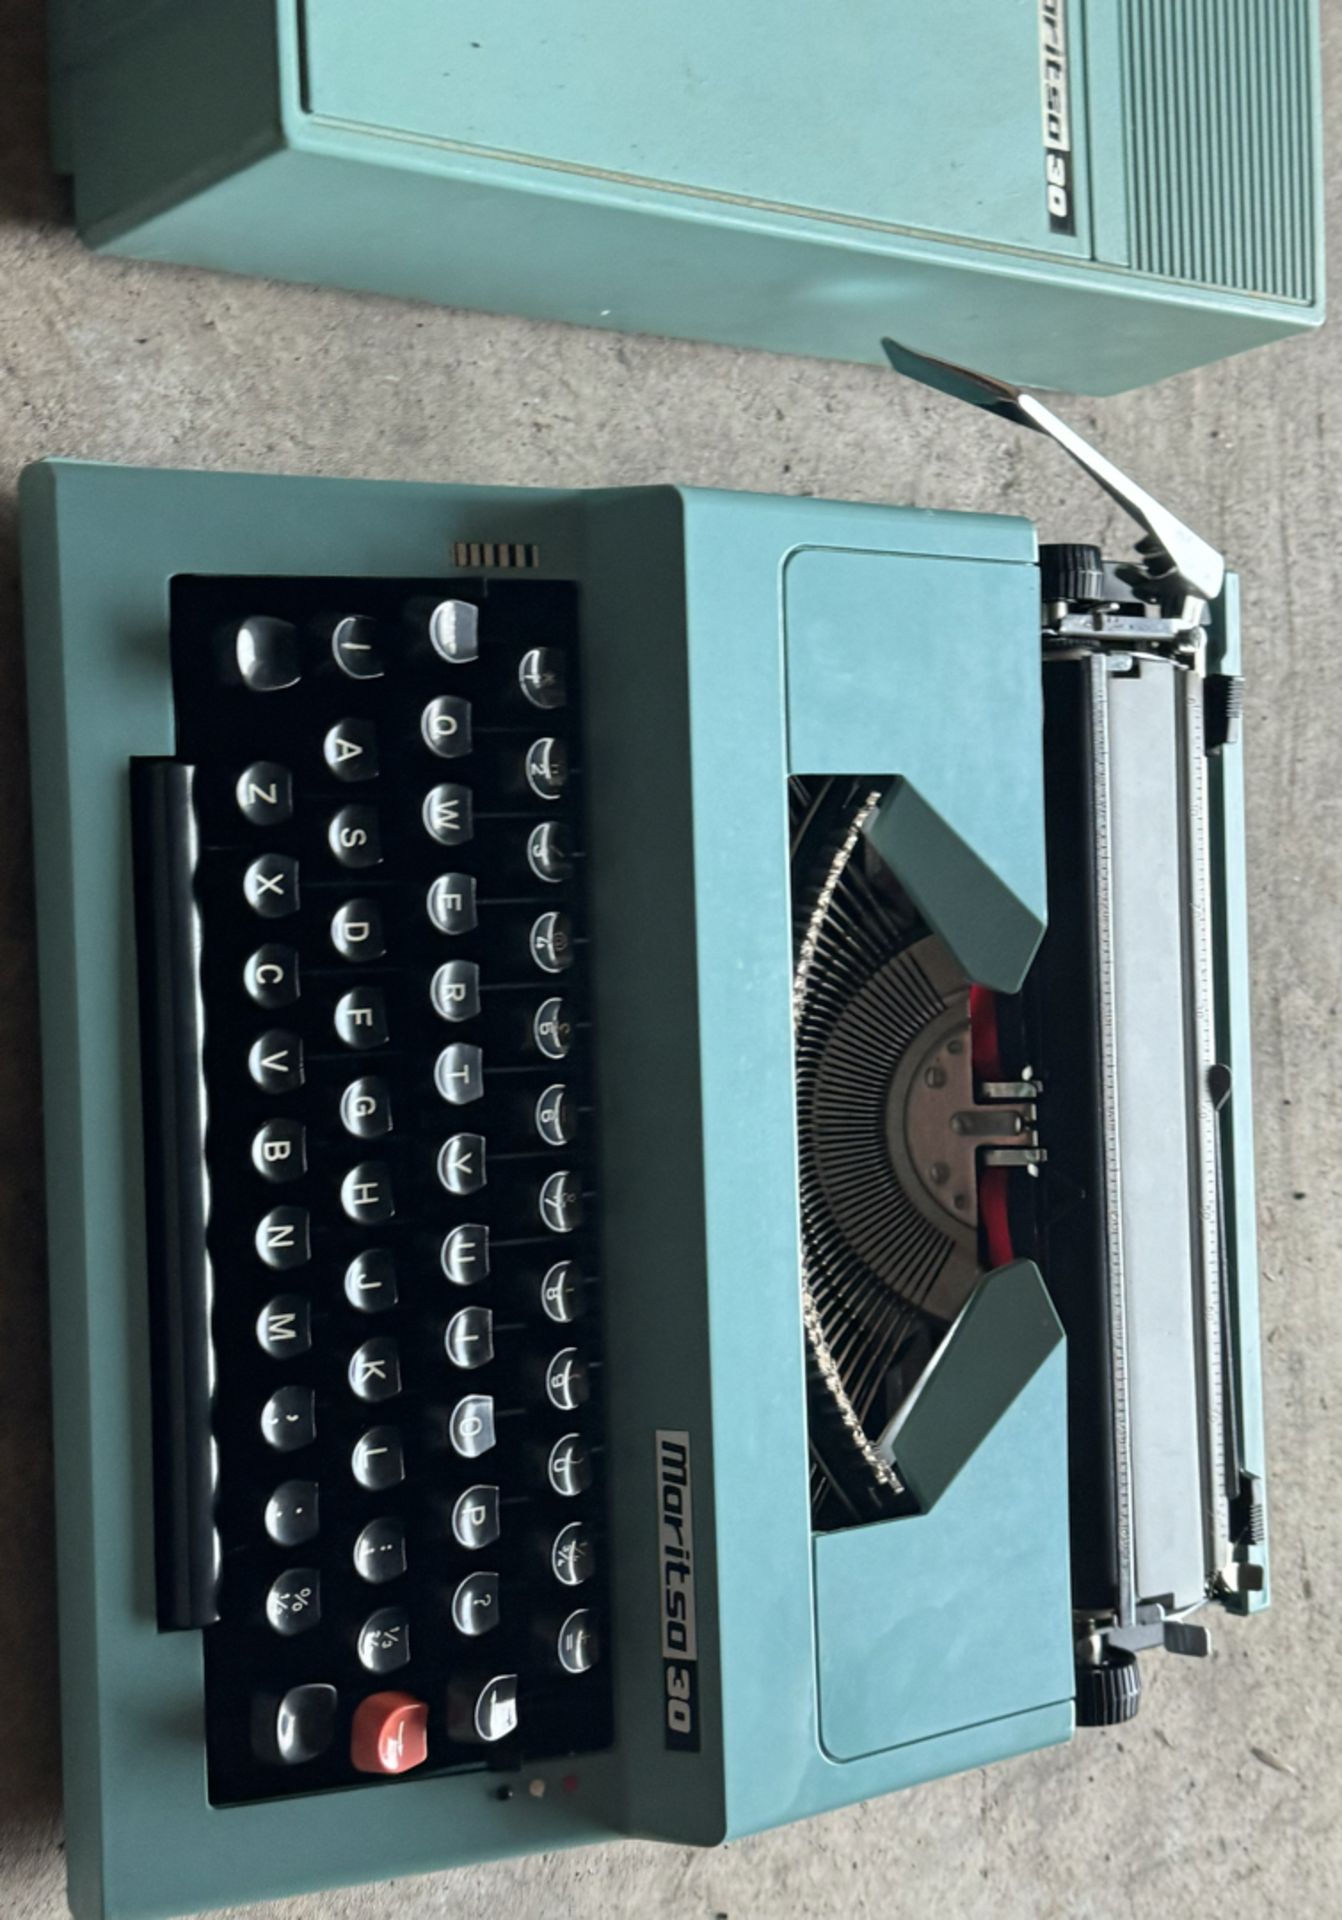 Vintage Blue Maritsa 30 Portable Typewriter in Case - Workshop Find, Untested - NO VAT ! - Image 3 of 3